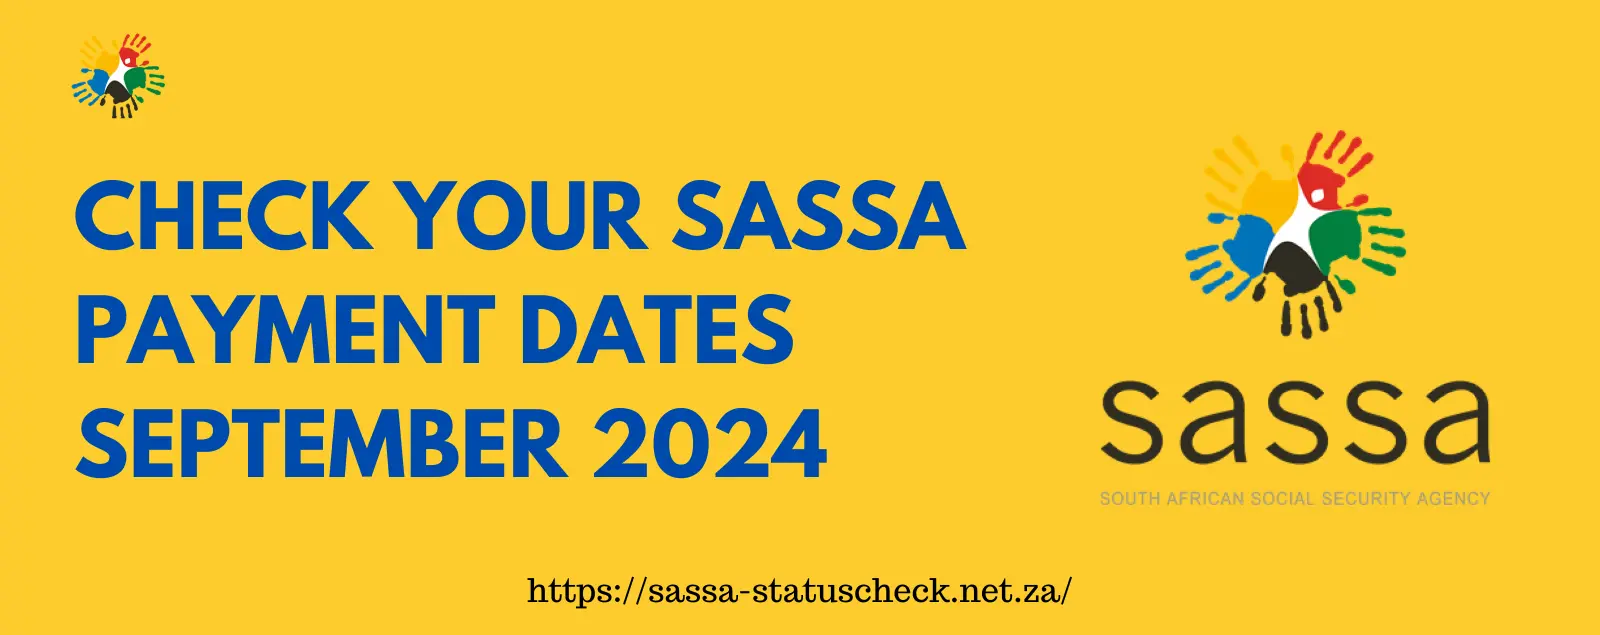 SASSA Payment Dates September 2024